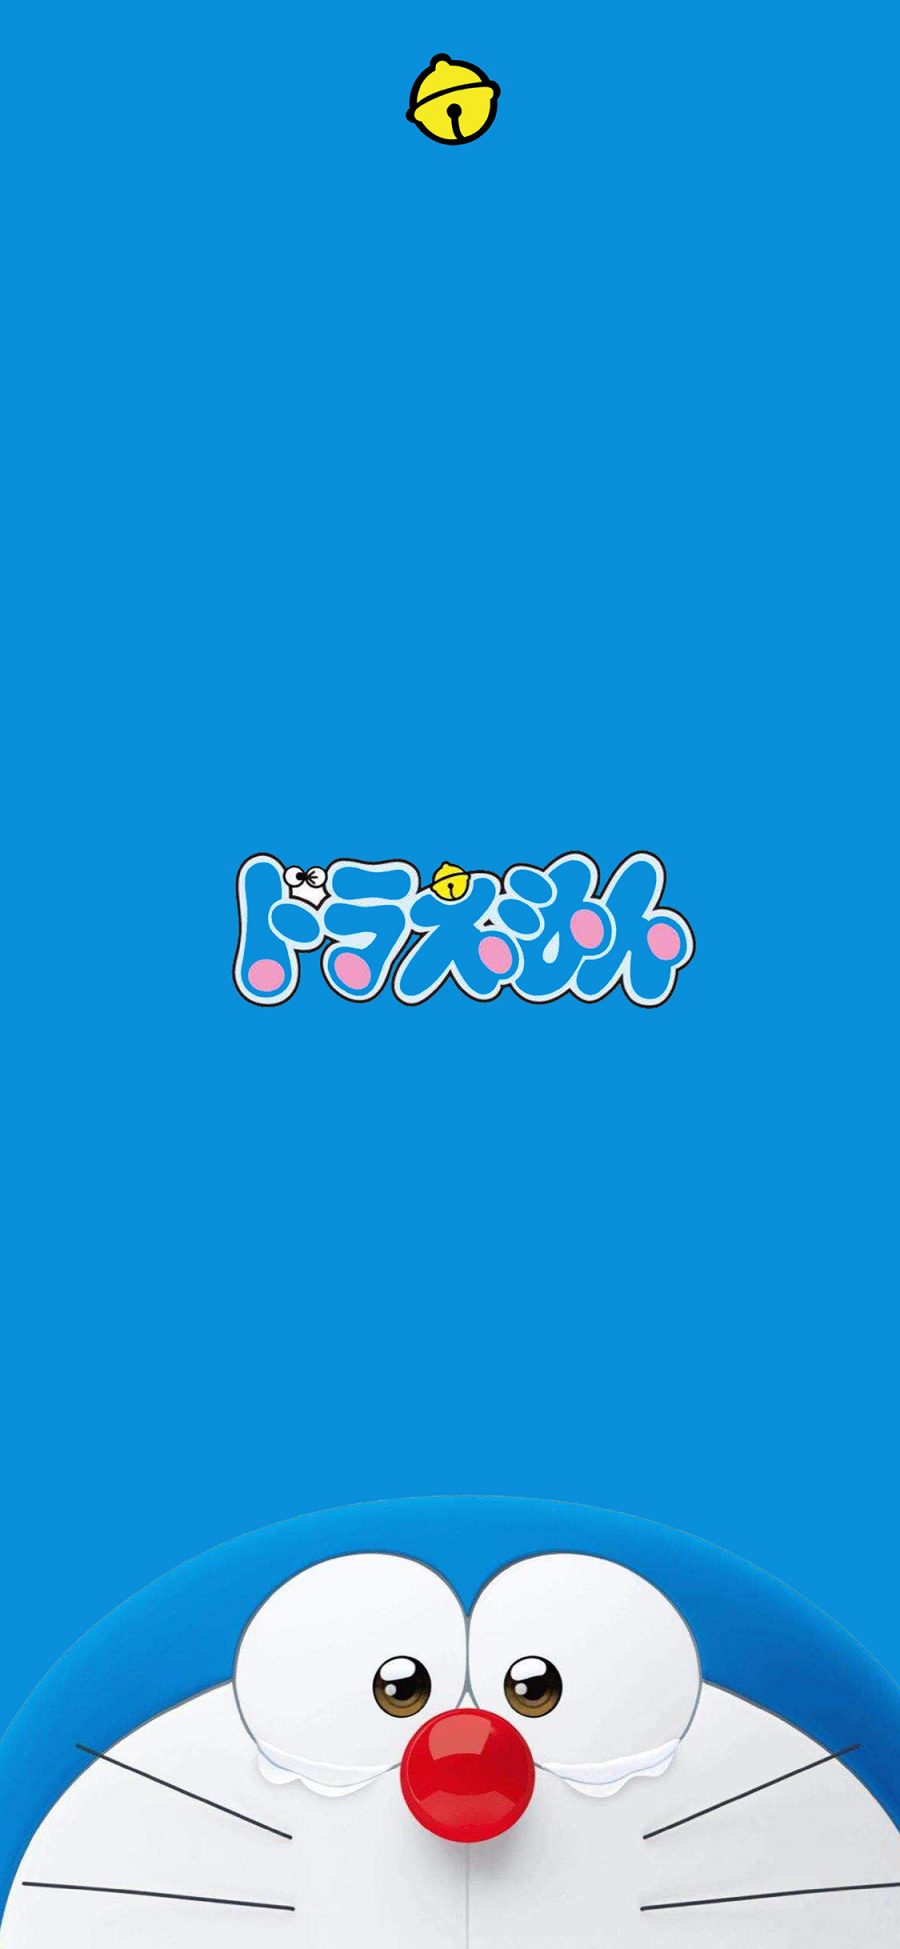 [2436×1125]哆啦A梦 叮当猫 卡通 蓝色 日本 动画 苹果手机动漫壁纸图片